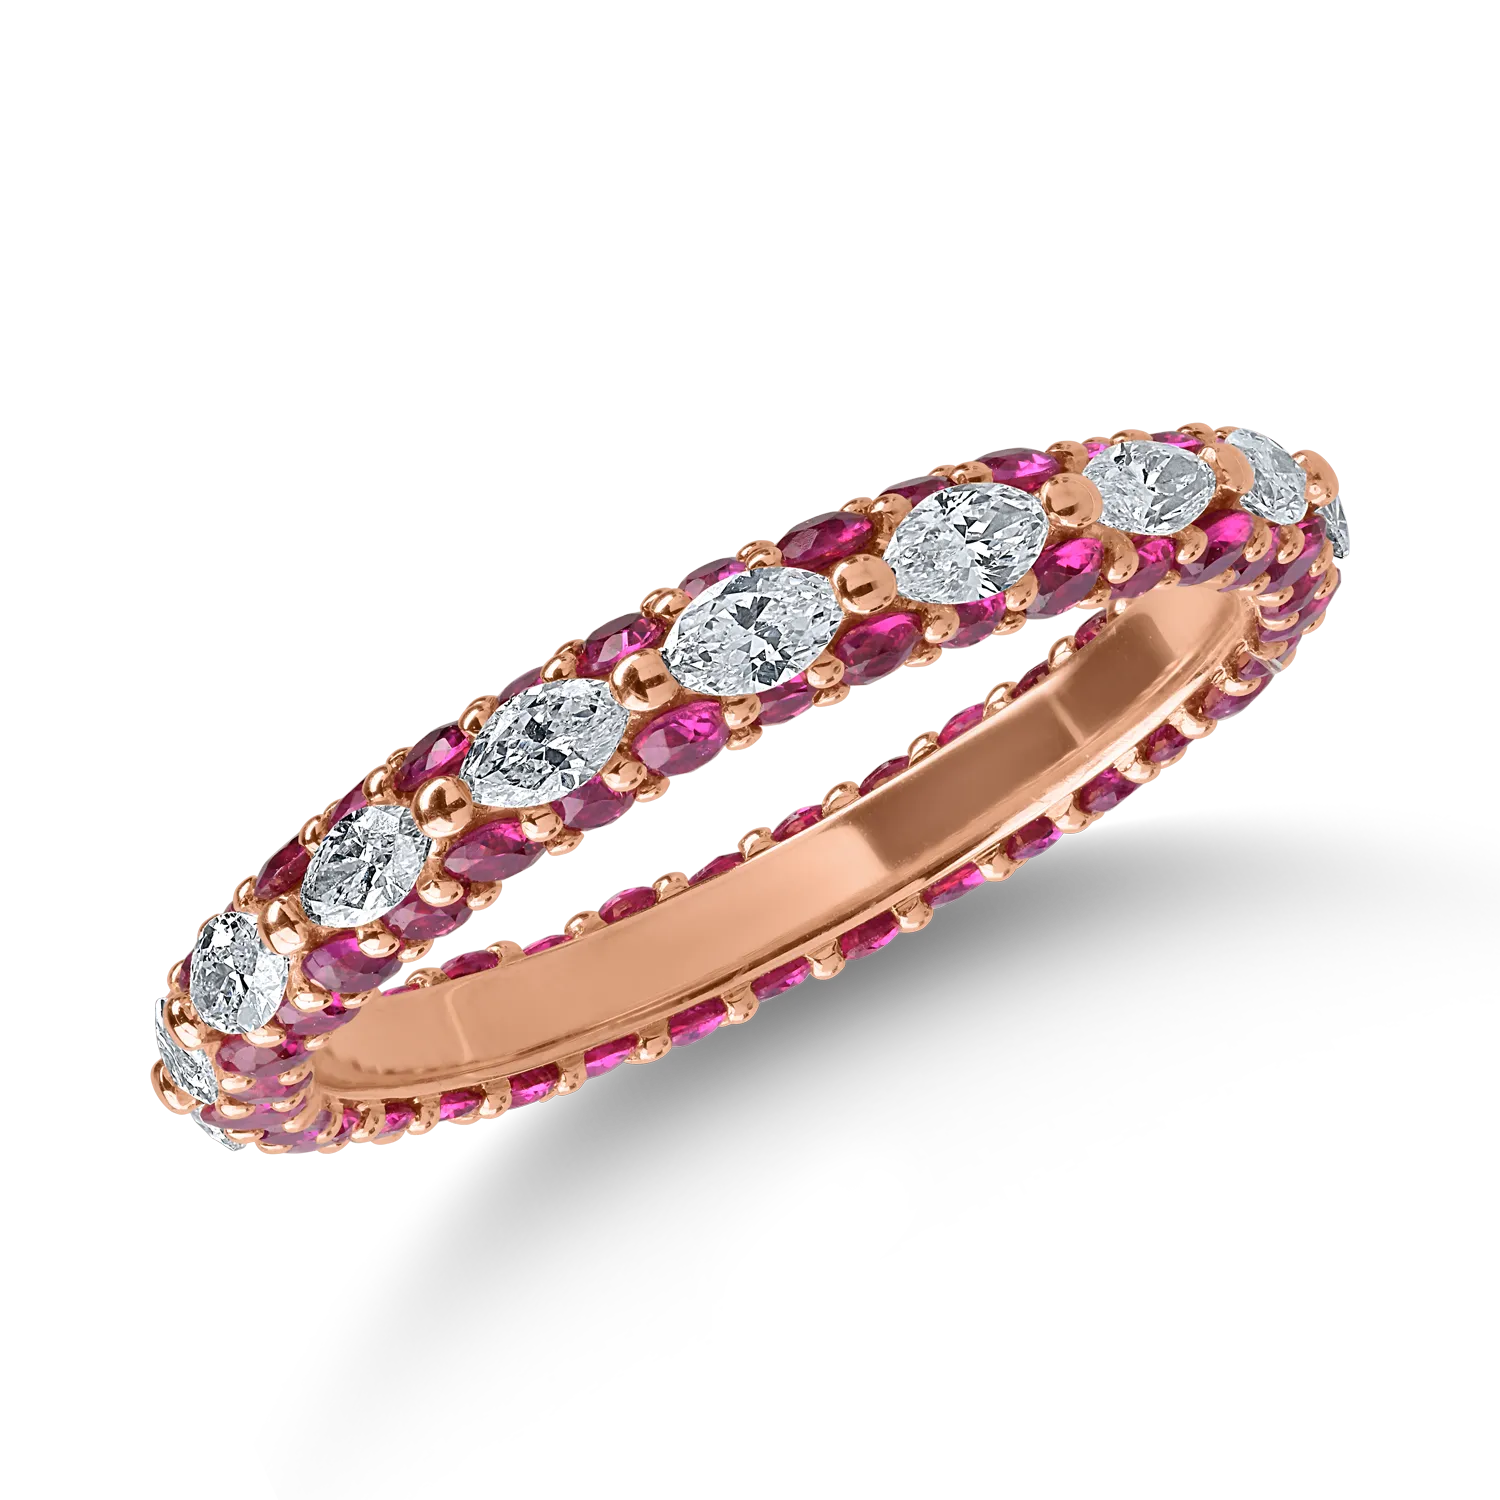 Örökkévalóság gyűrű rózsaszín aranyból 0.6ct gyémántokkal és 1.2ct rubinokkal